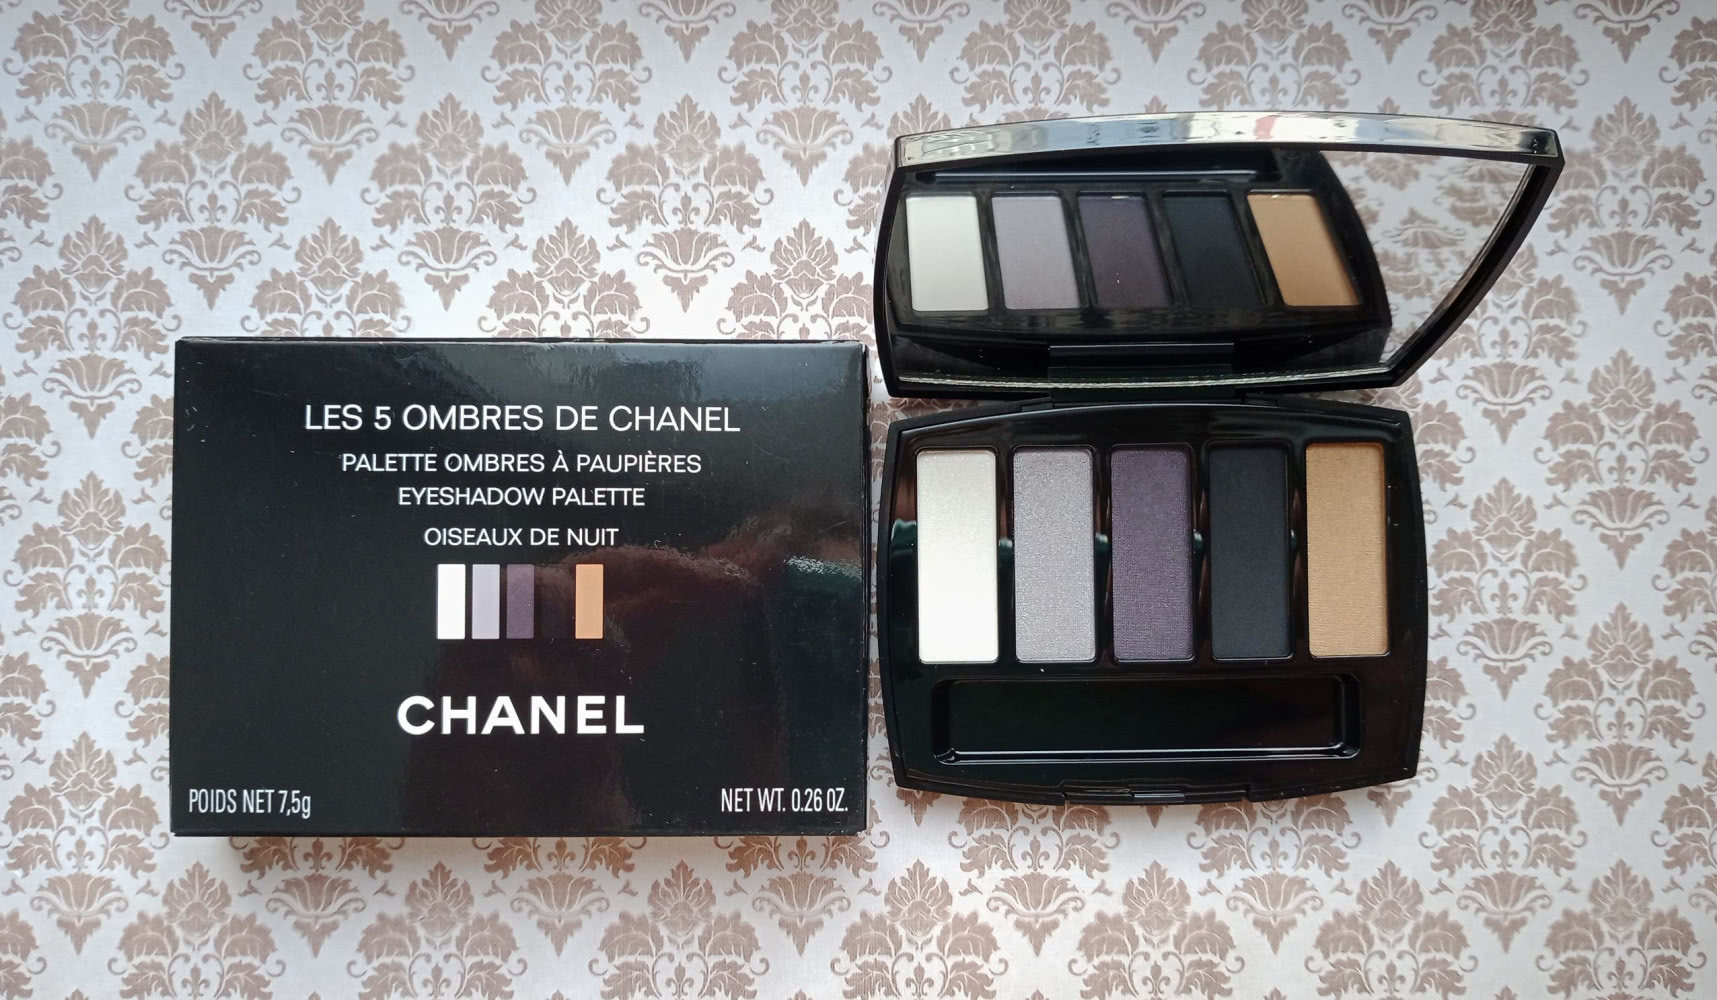 Chanel Les 5 Ombres De Chanel Eyeshadow Palette Oiseaux de Nuit